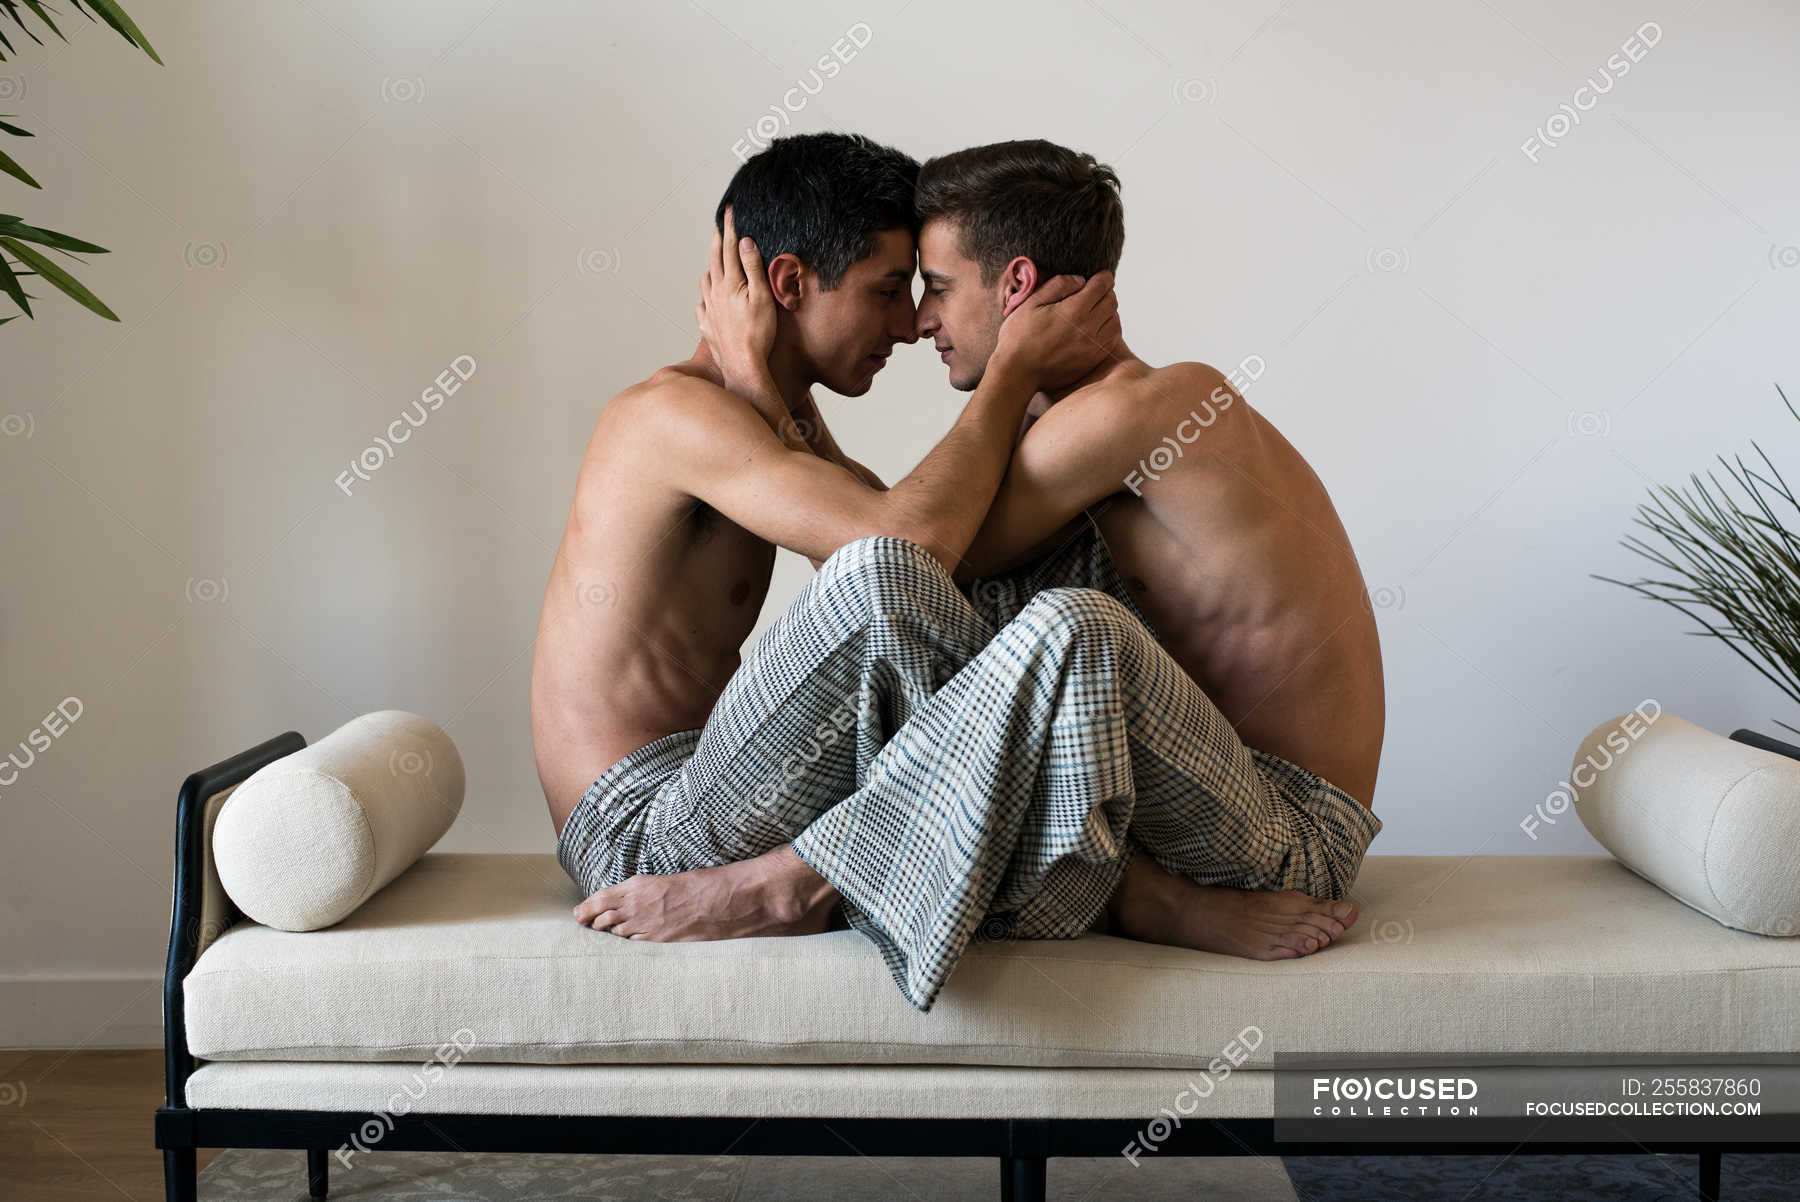 gay men kissing shirtless